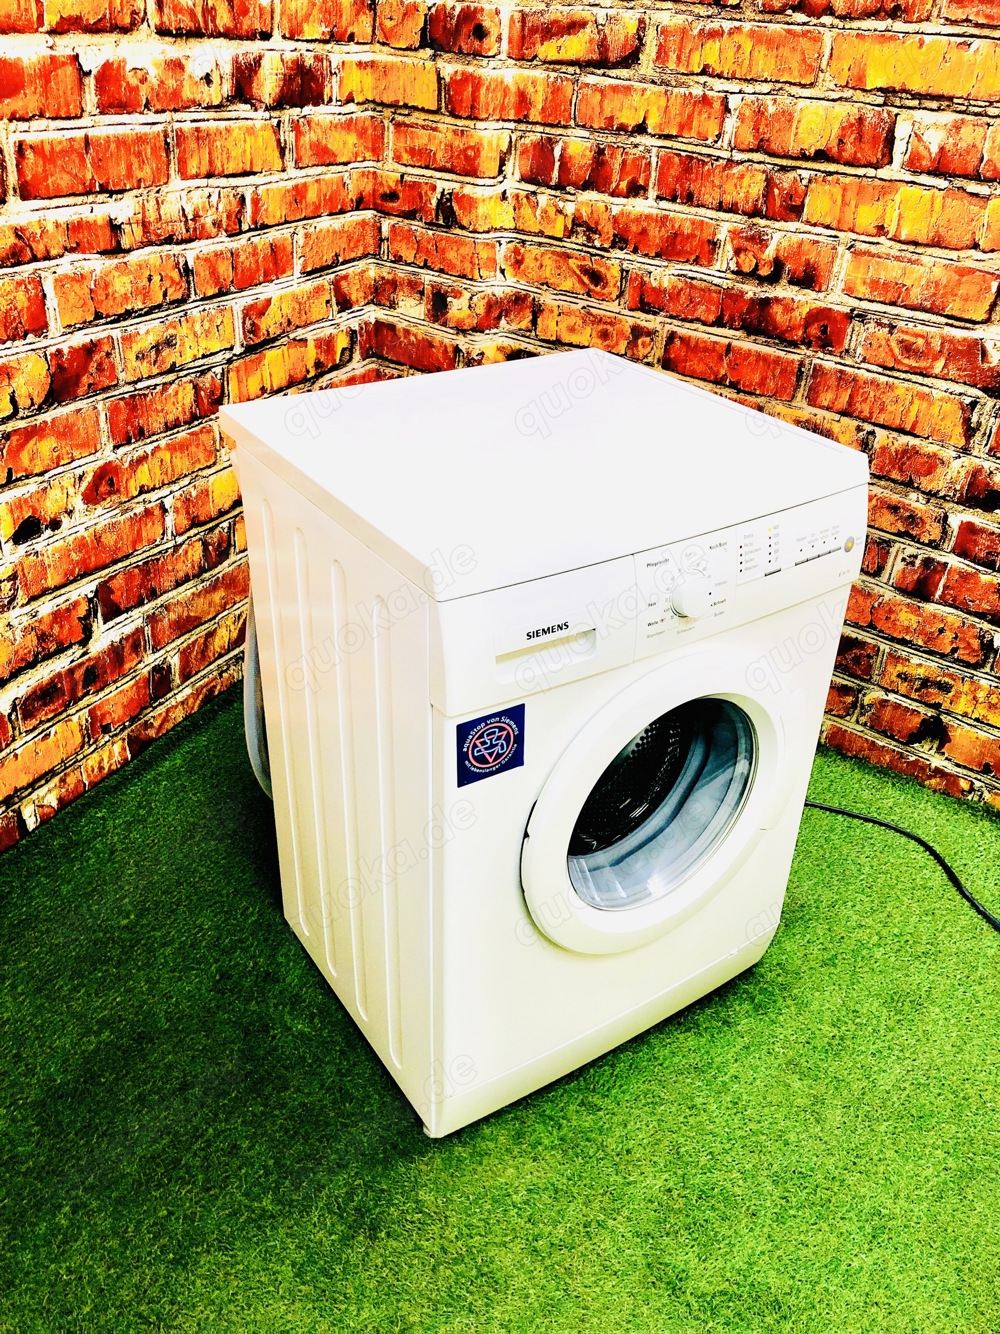  6Kg Waschmaschine Siemens (Lieferung möglich)